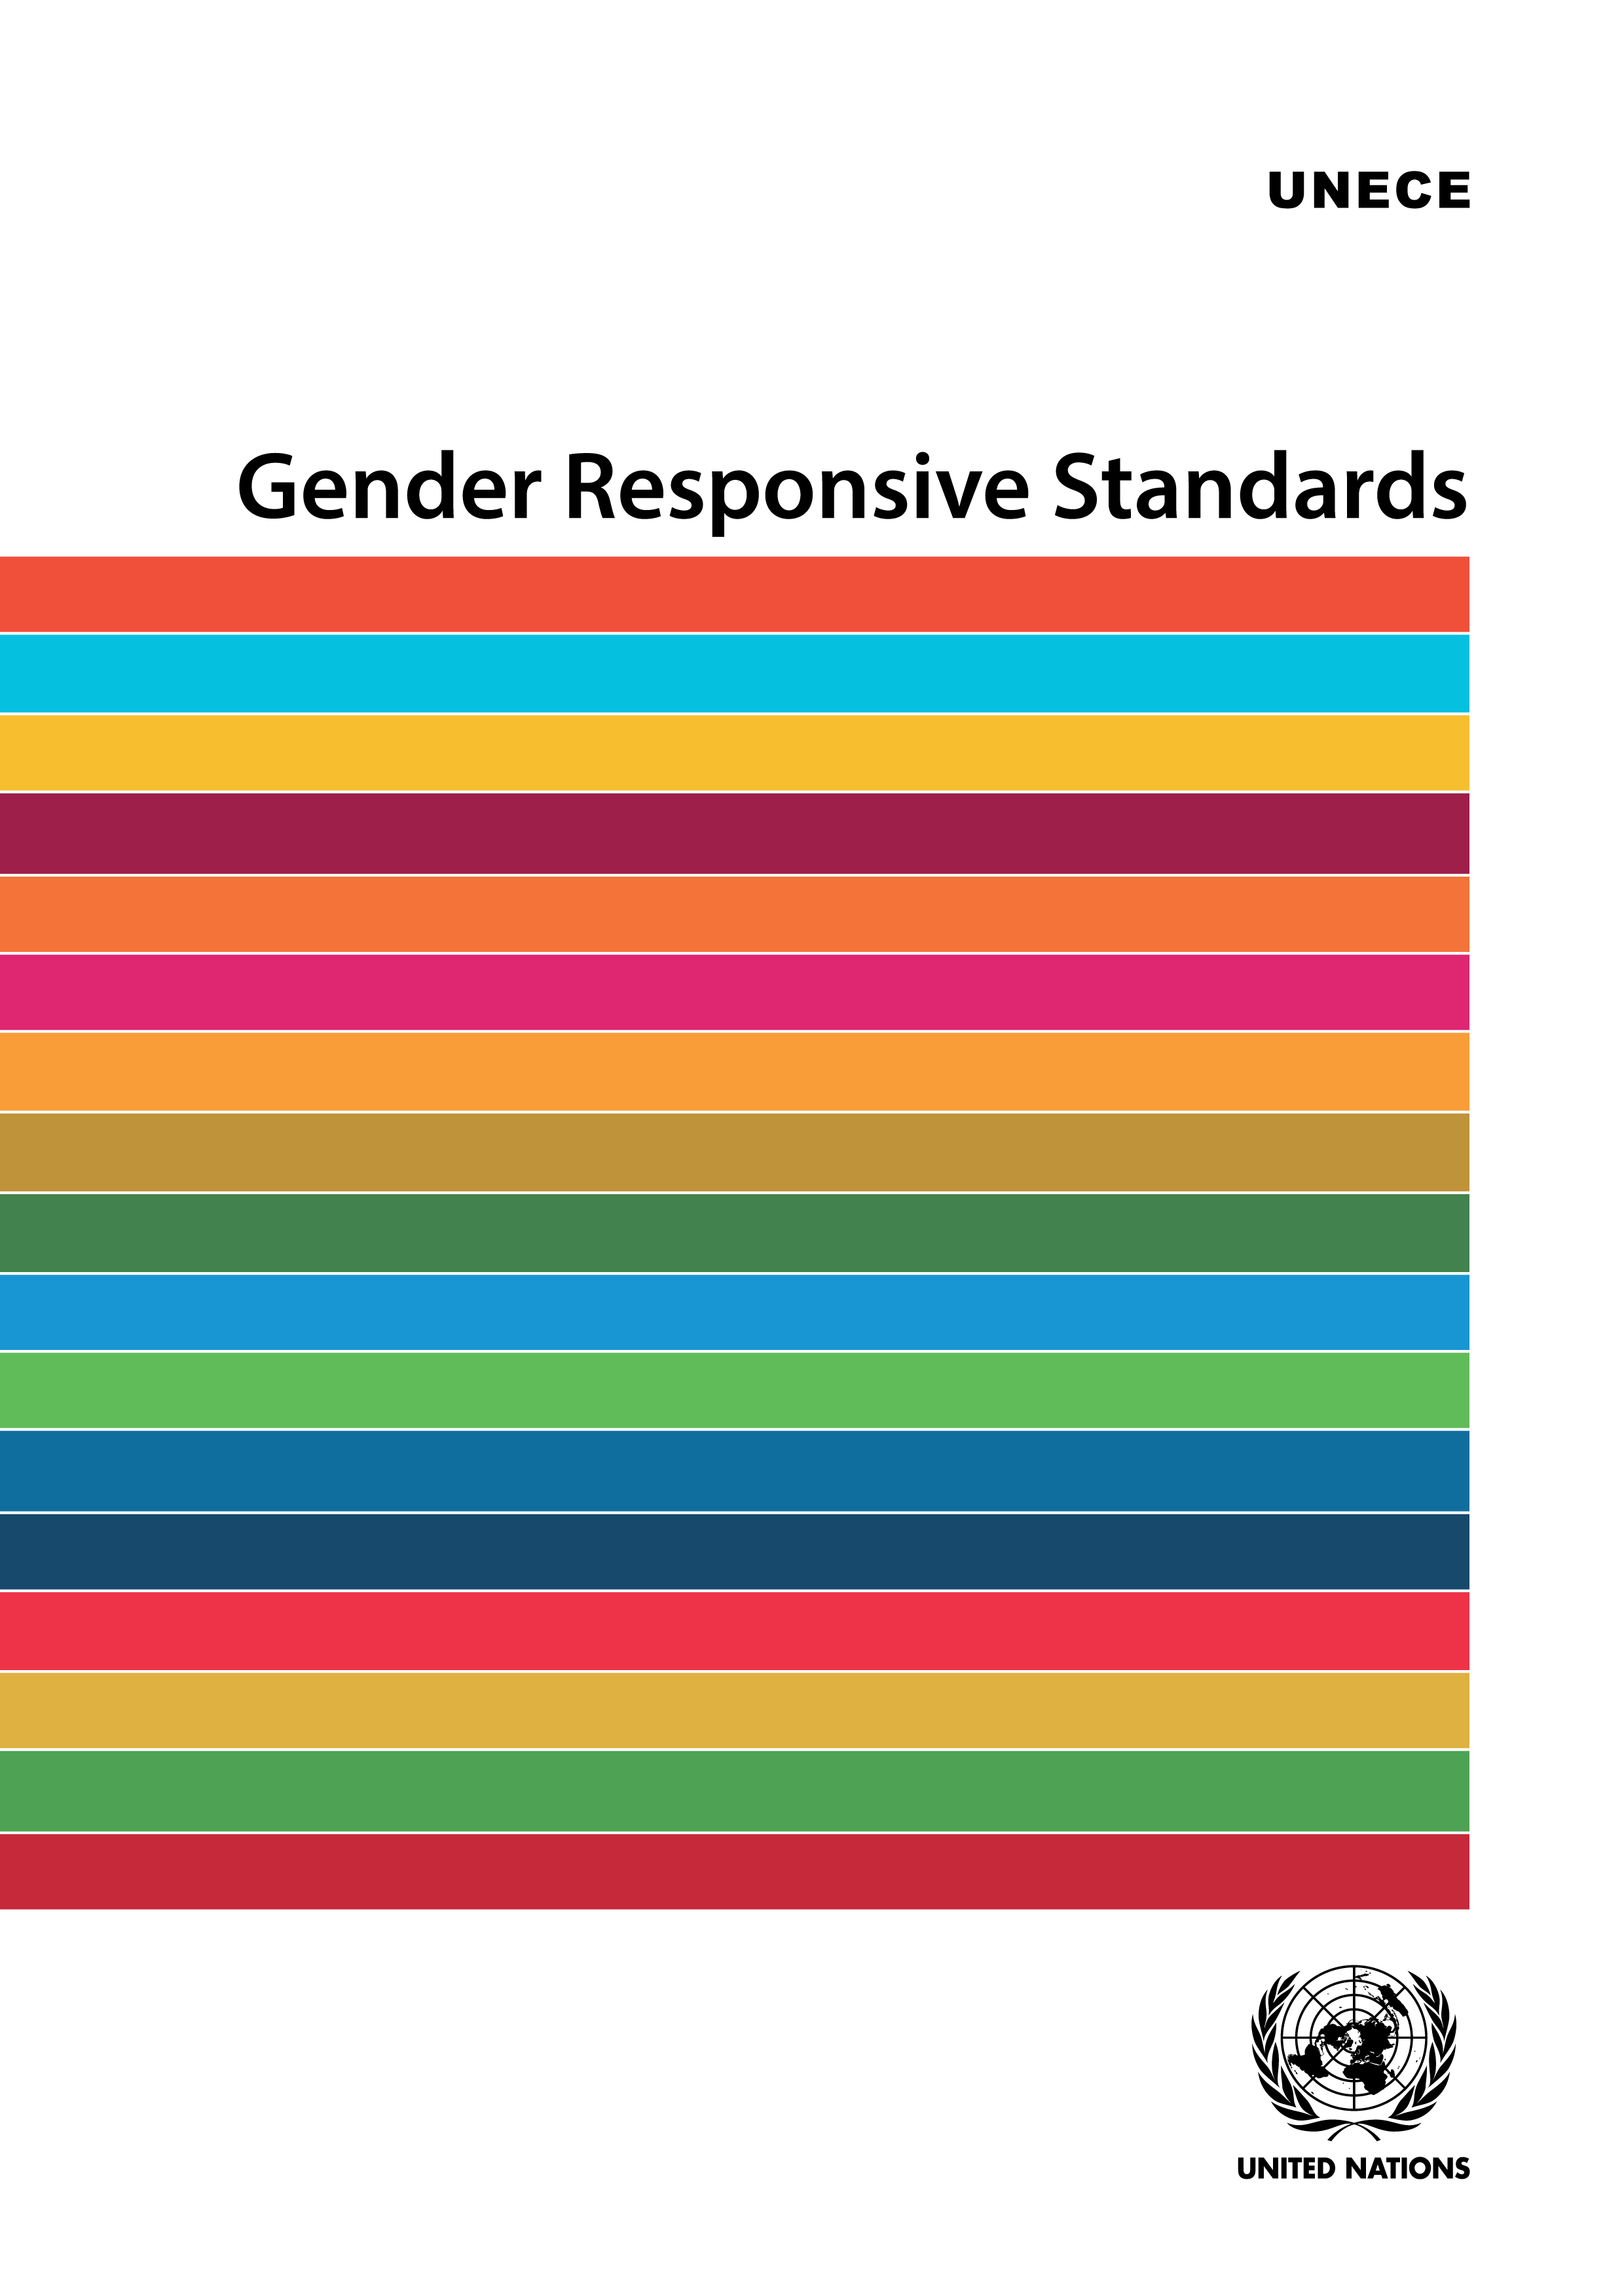 image of Gender Responsive Standards